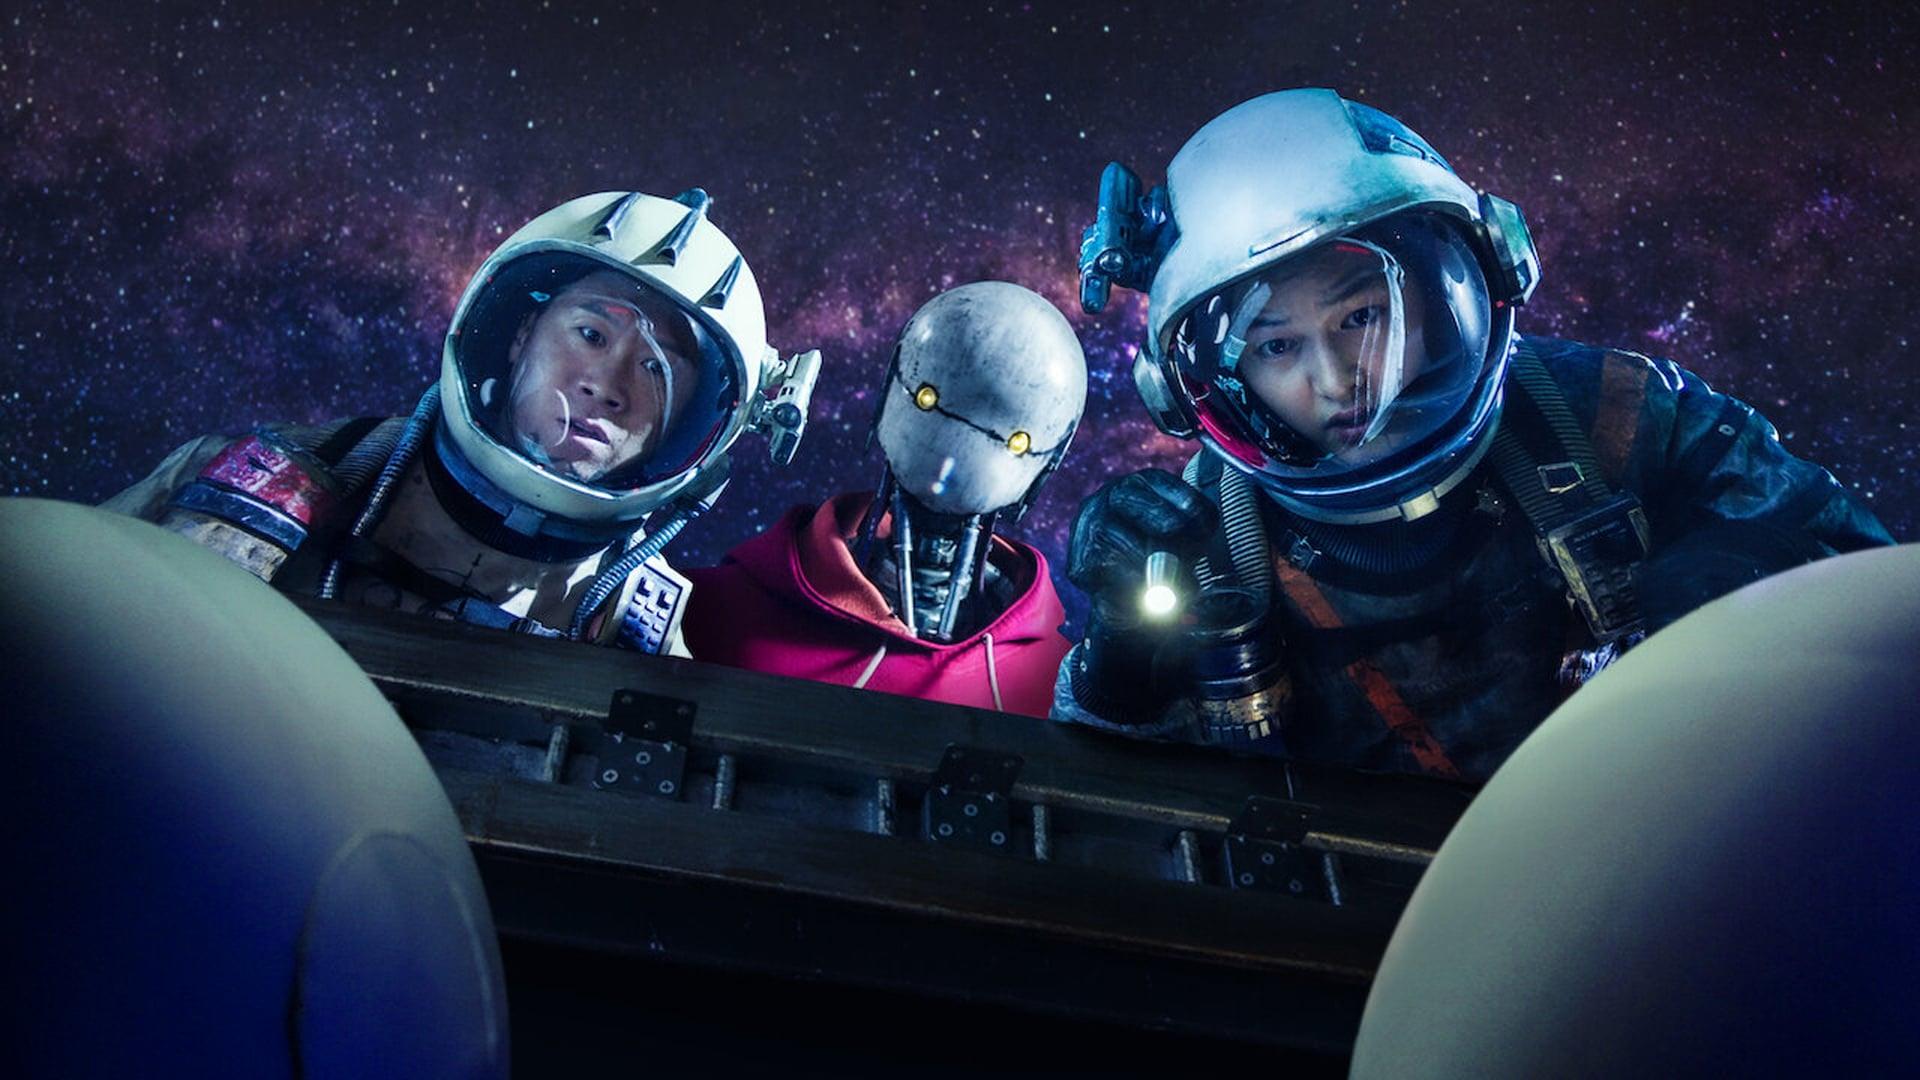 کاپیتان جانگ، تایگر پارک و ربات در فضا در حال تماشا درون محفظه در فیلم Space Sweepers